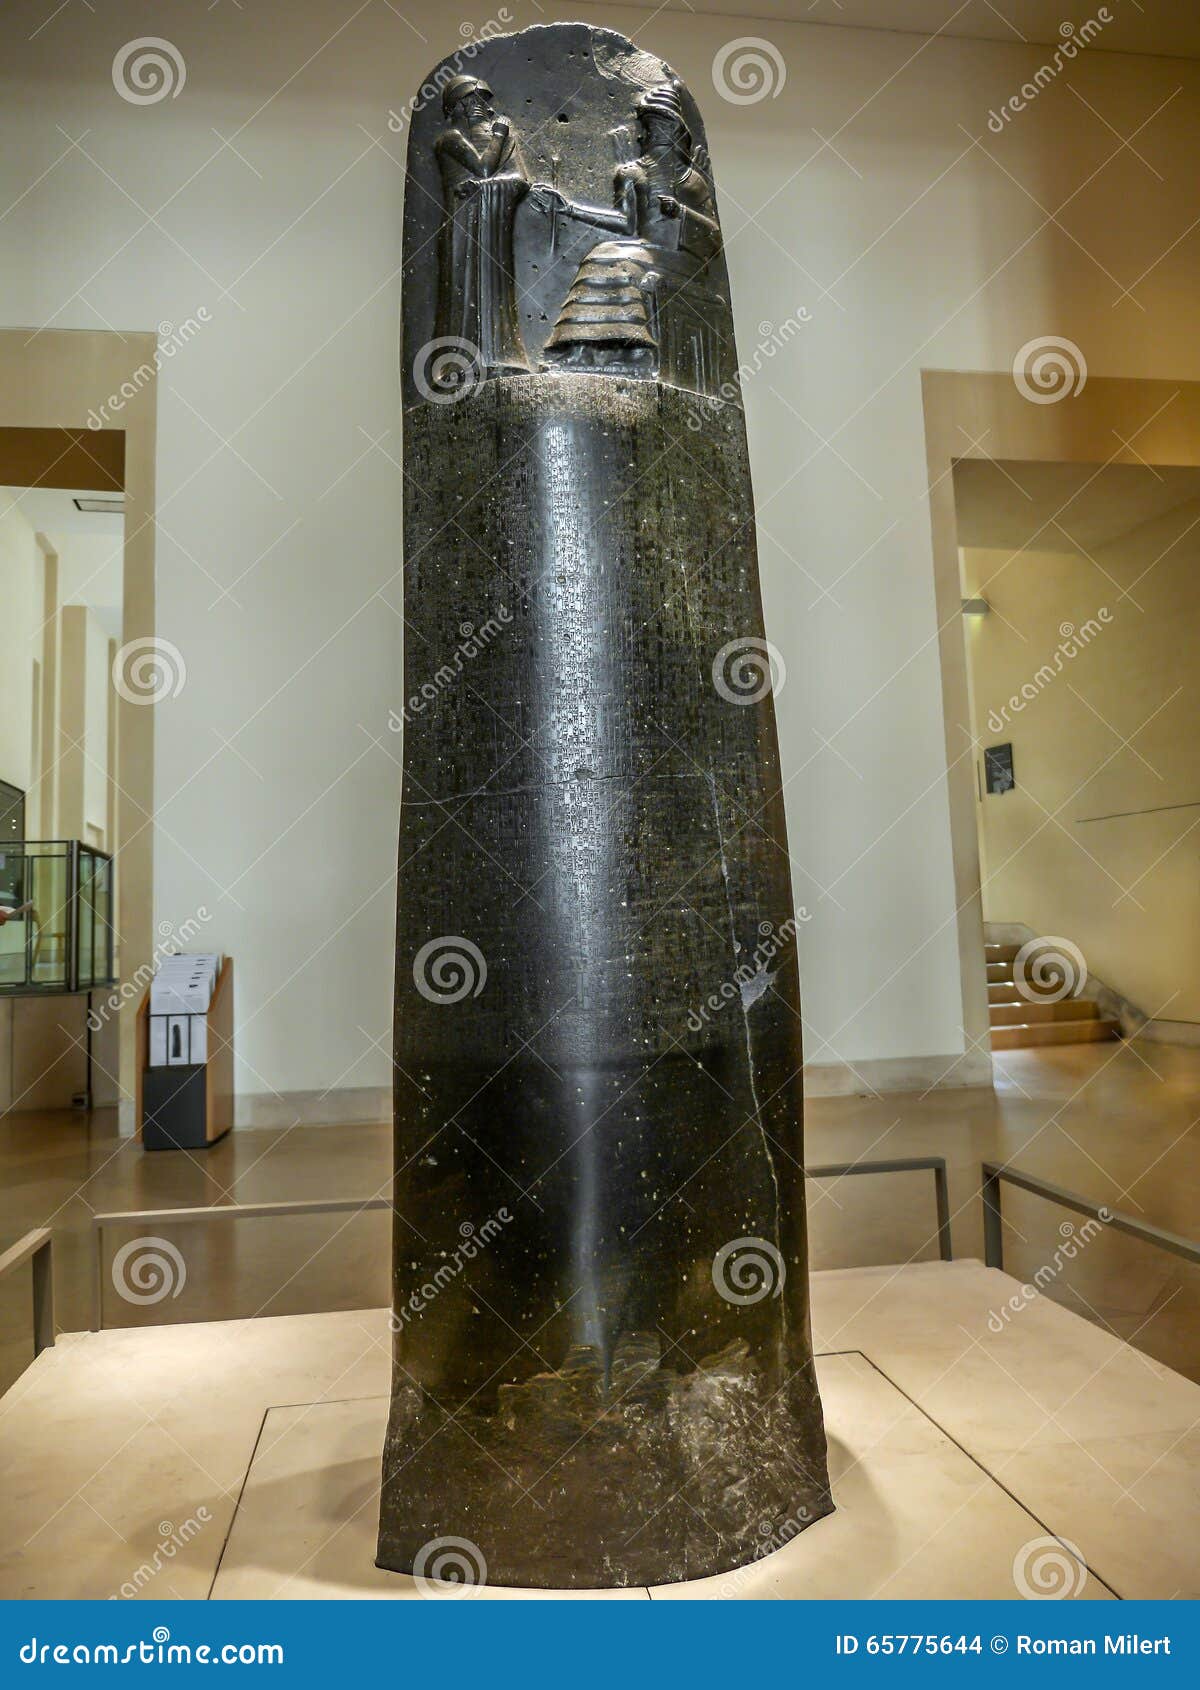 Law Code of Hammurabi editorial stock image. Image of code ...